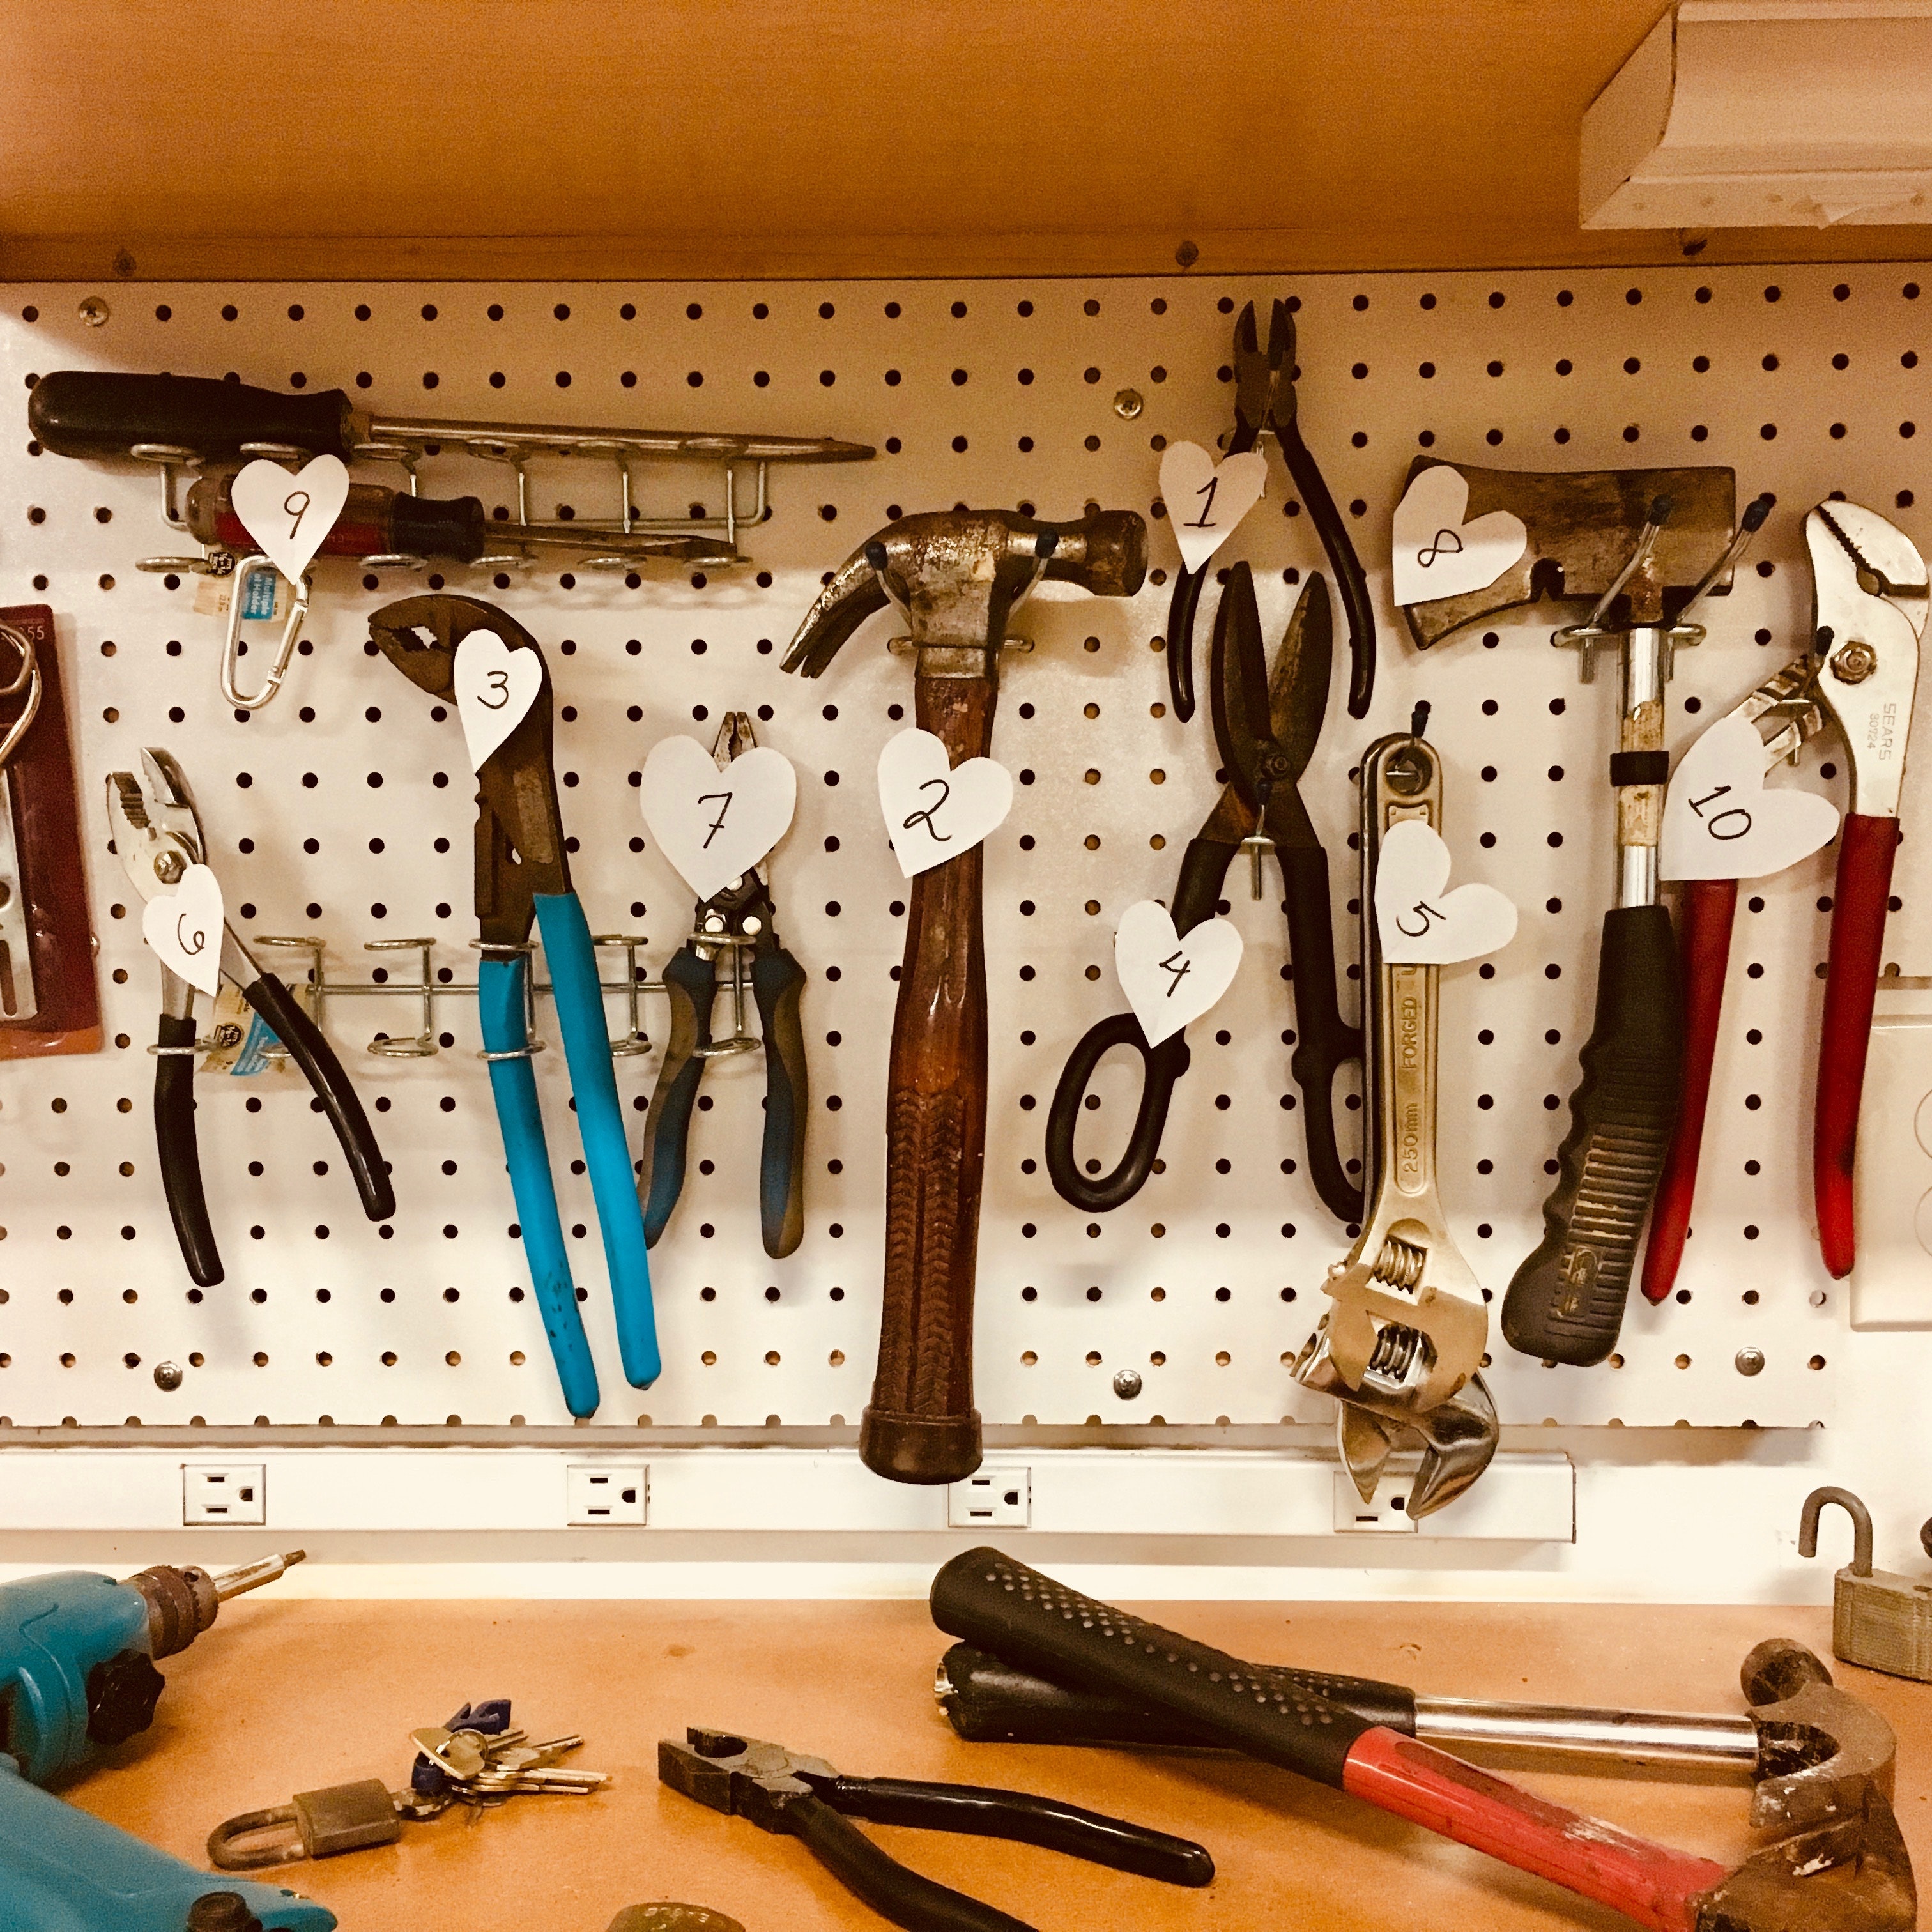 Tanie narzędzia – klucz do efektywności i oszczędności